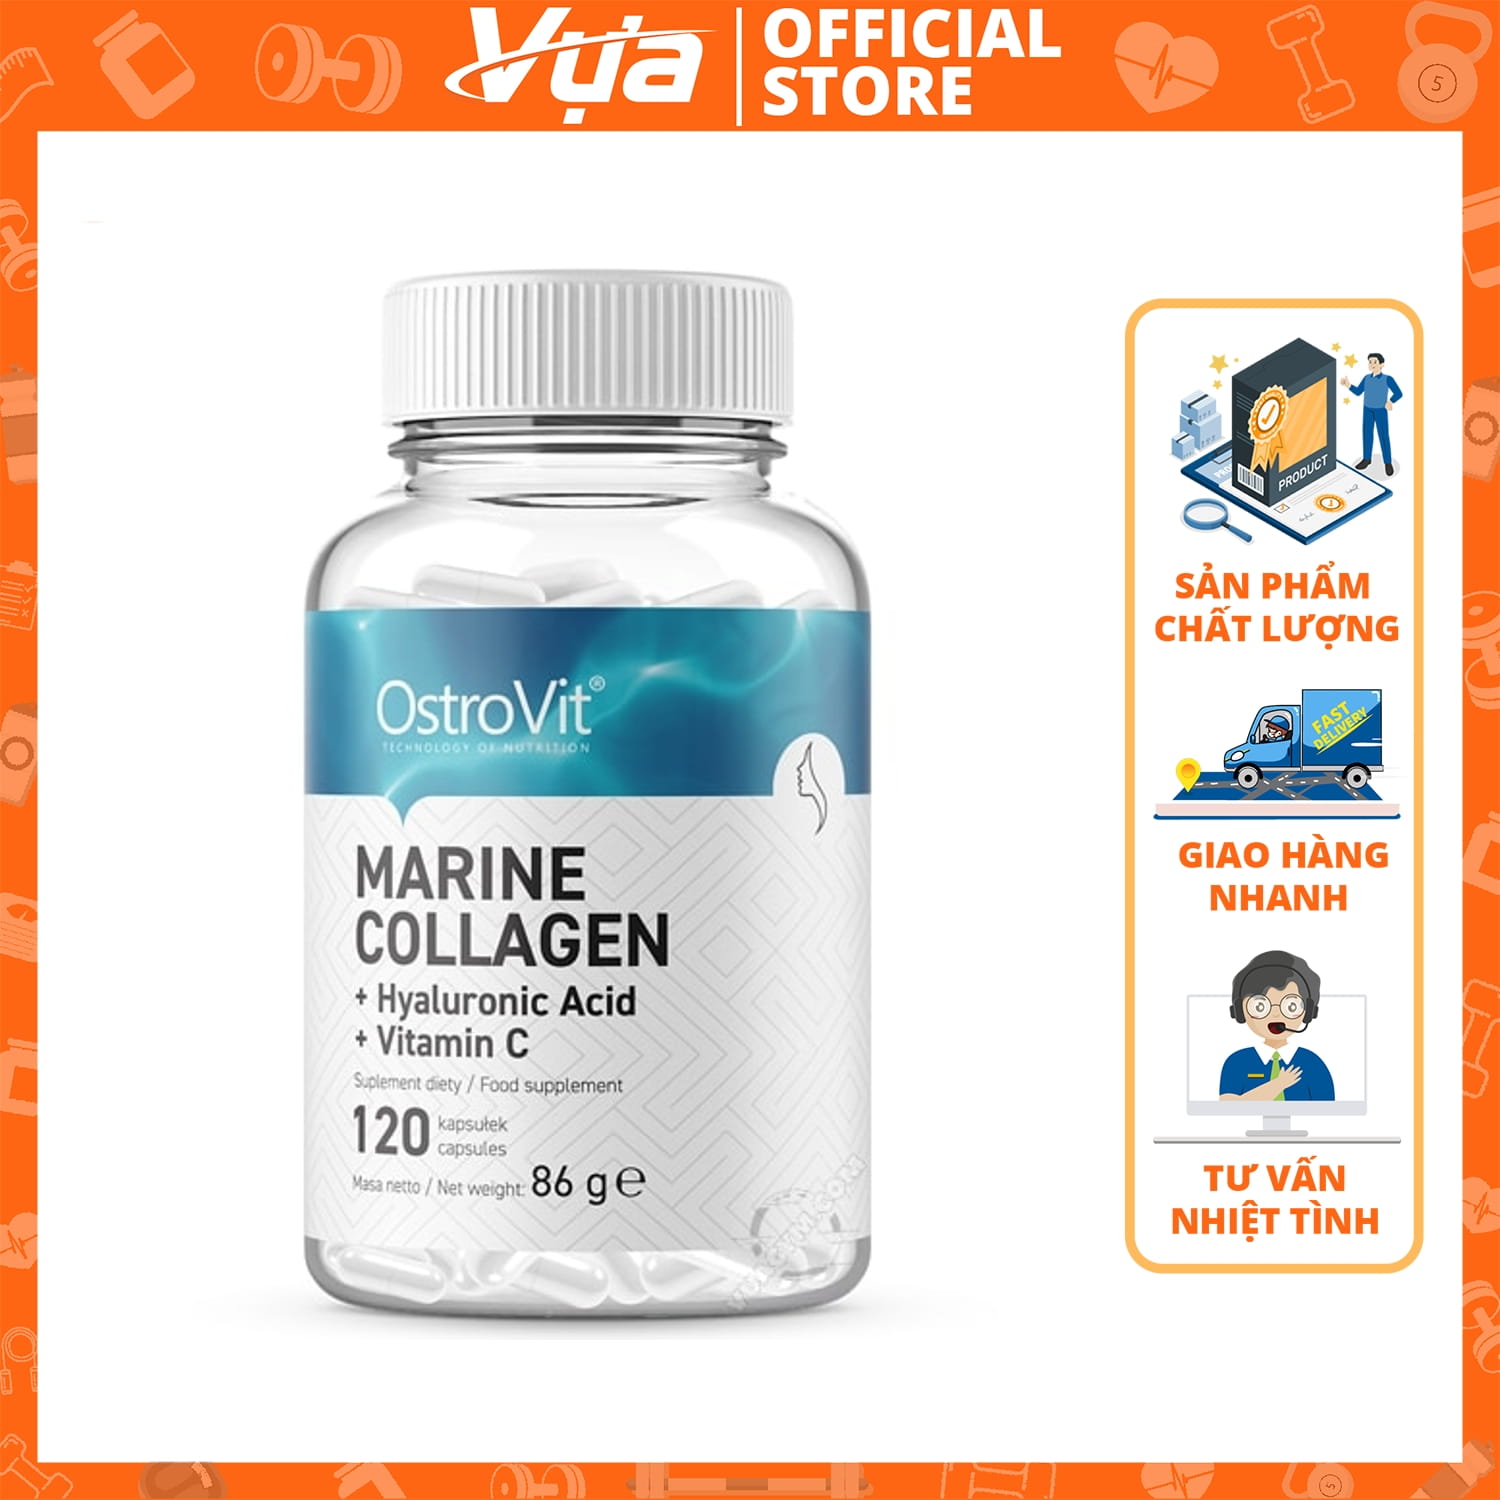 OstroVit - Marine Collagen + Hyaluronic Acid + Vitamin C